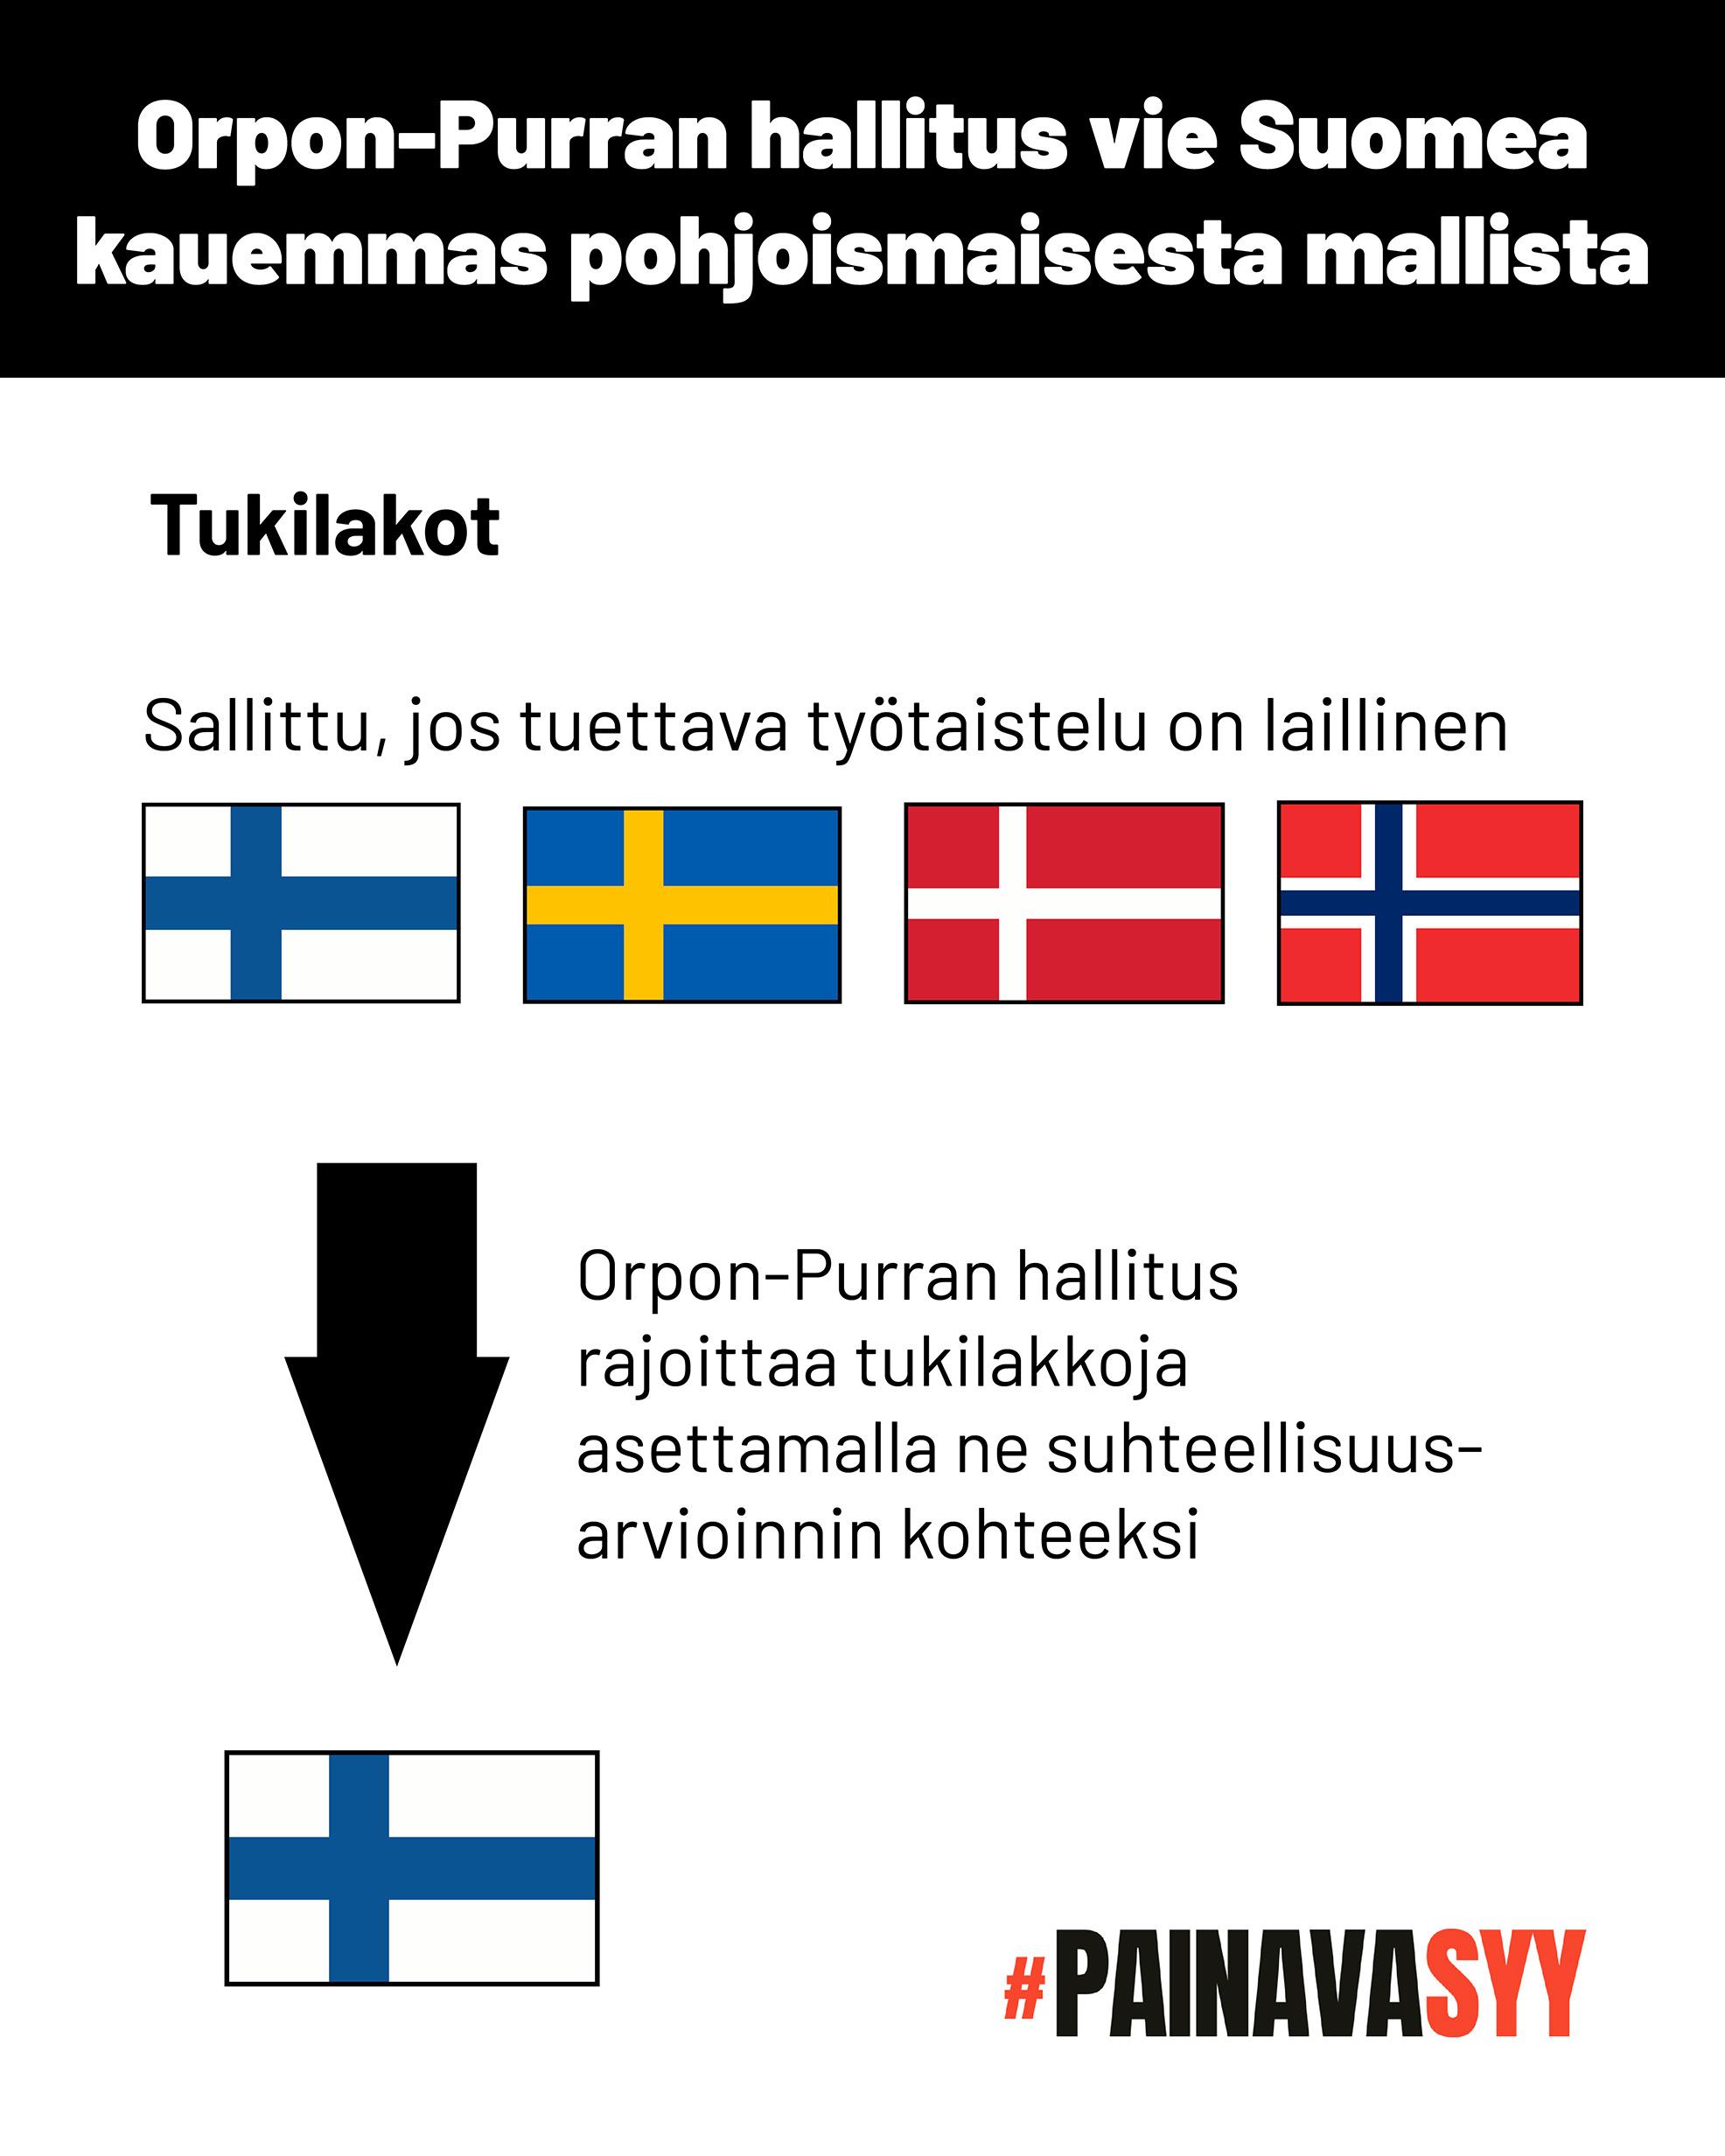 Kaavio osoittaa, että Suomessa, Ruotsissa, Tanskassa ja Norjassa tukilakot ovat sallittuja, jos tuettava työtaistelu on laillinen. Orpon-Purran hallitus rajoittaa tukilakkoja Suomessa asettamalla ne suhteellisuusarvioinnin kohteeksi.